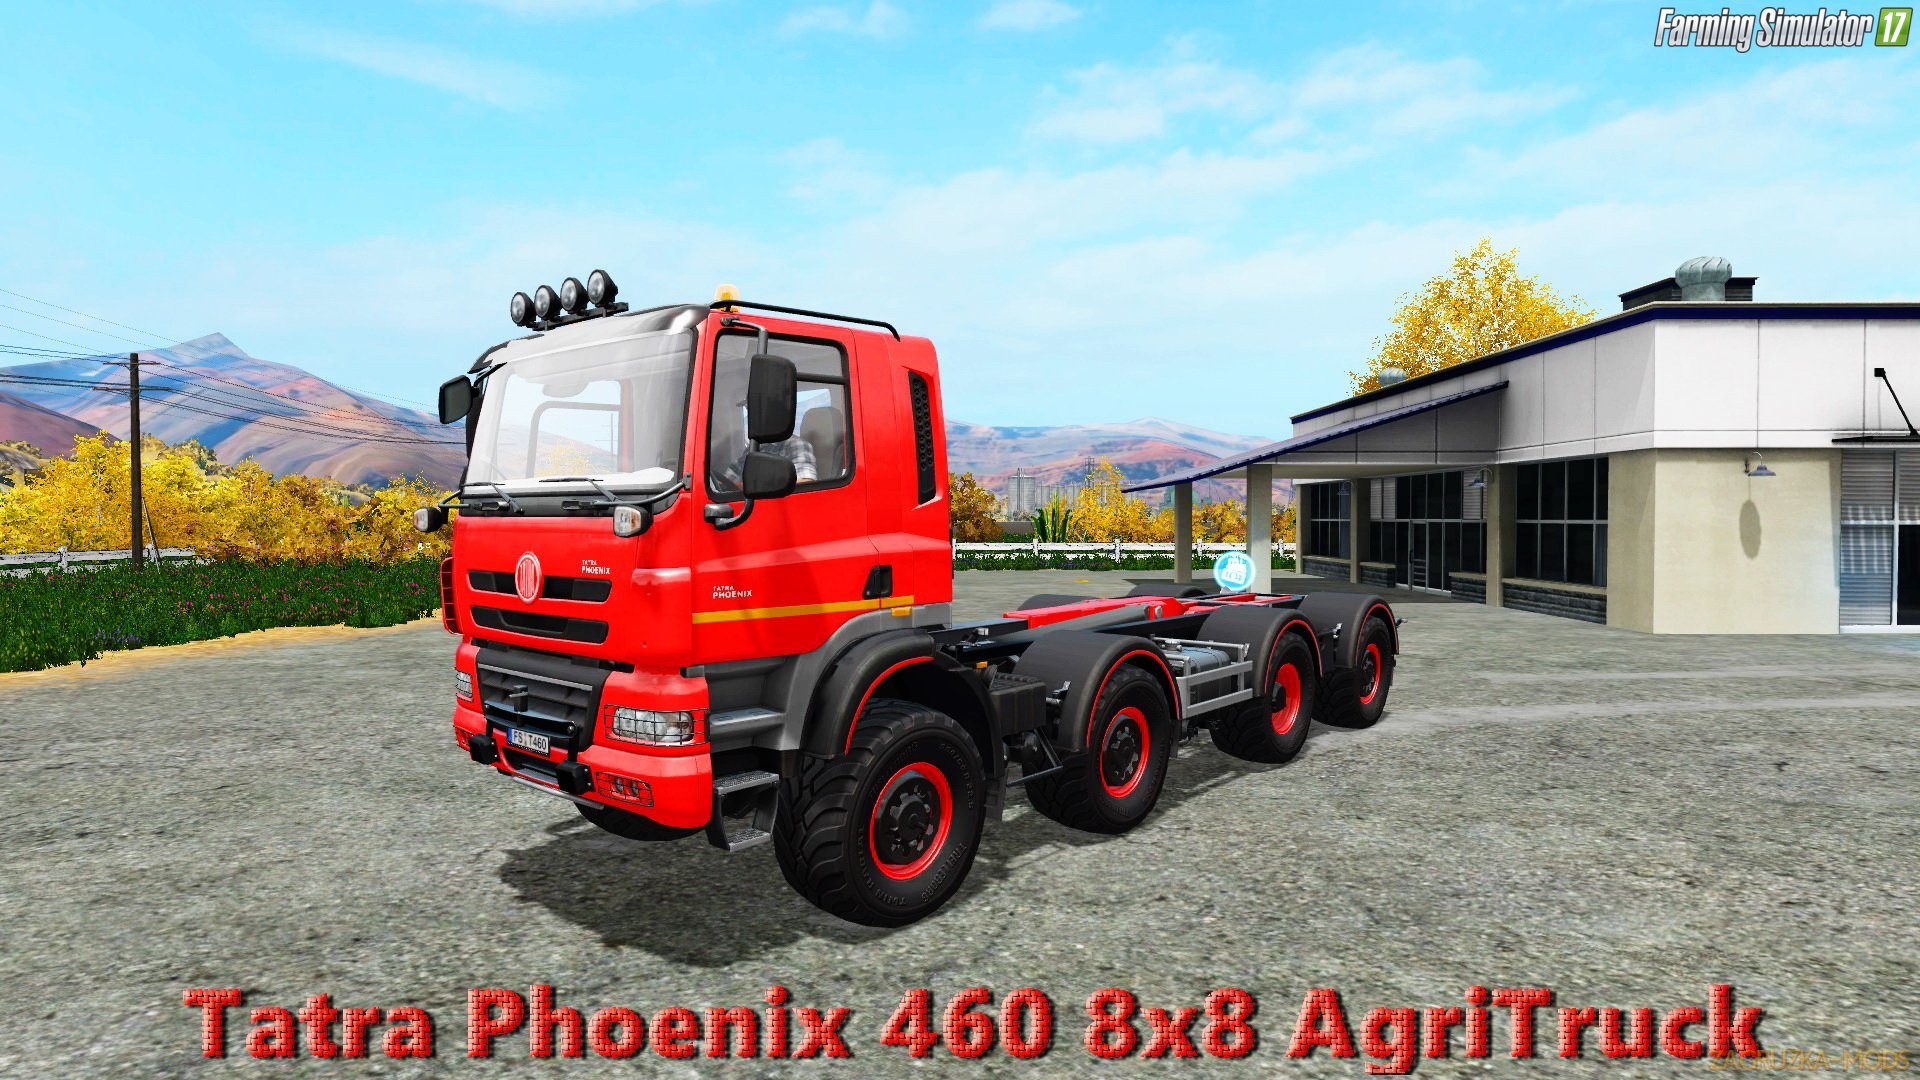 Tatra Phoenix 460 8x8 AgriTruck v1.0 for FS 17